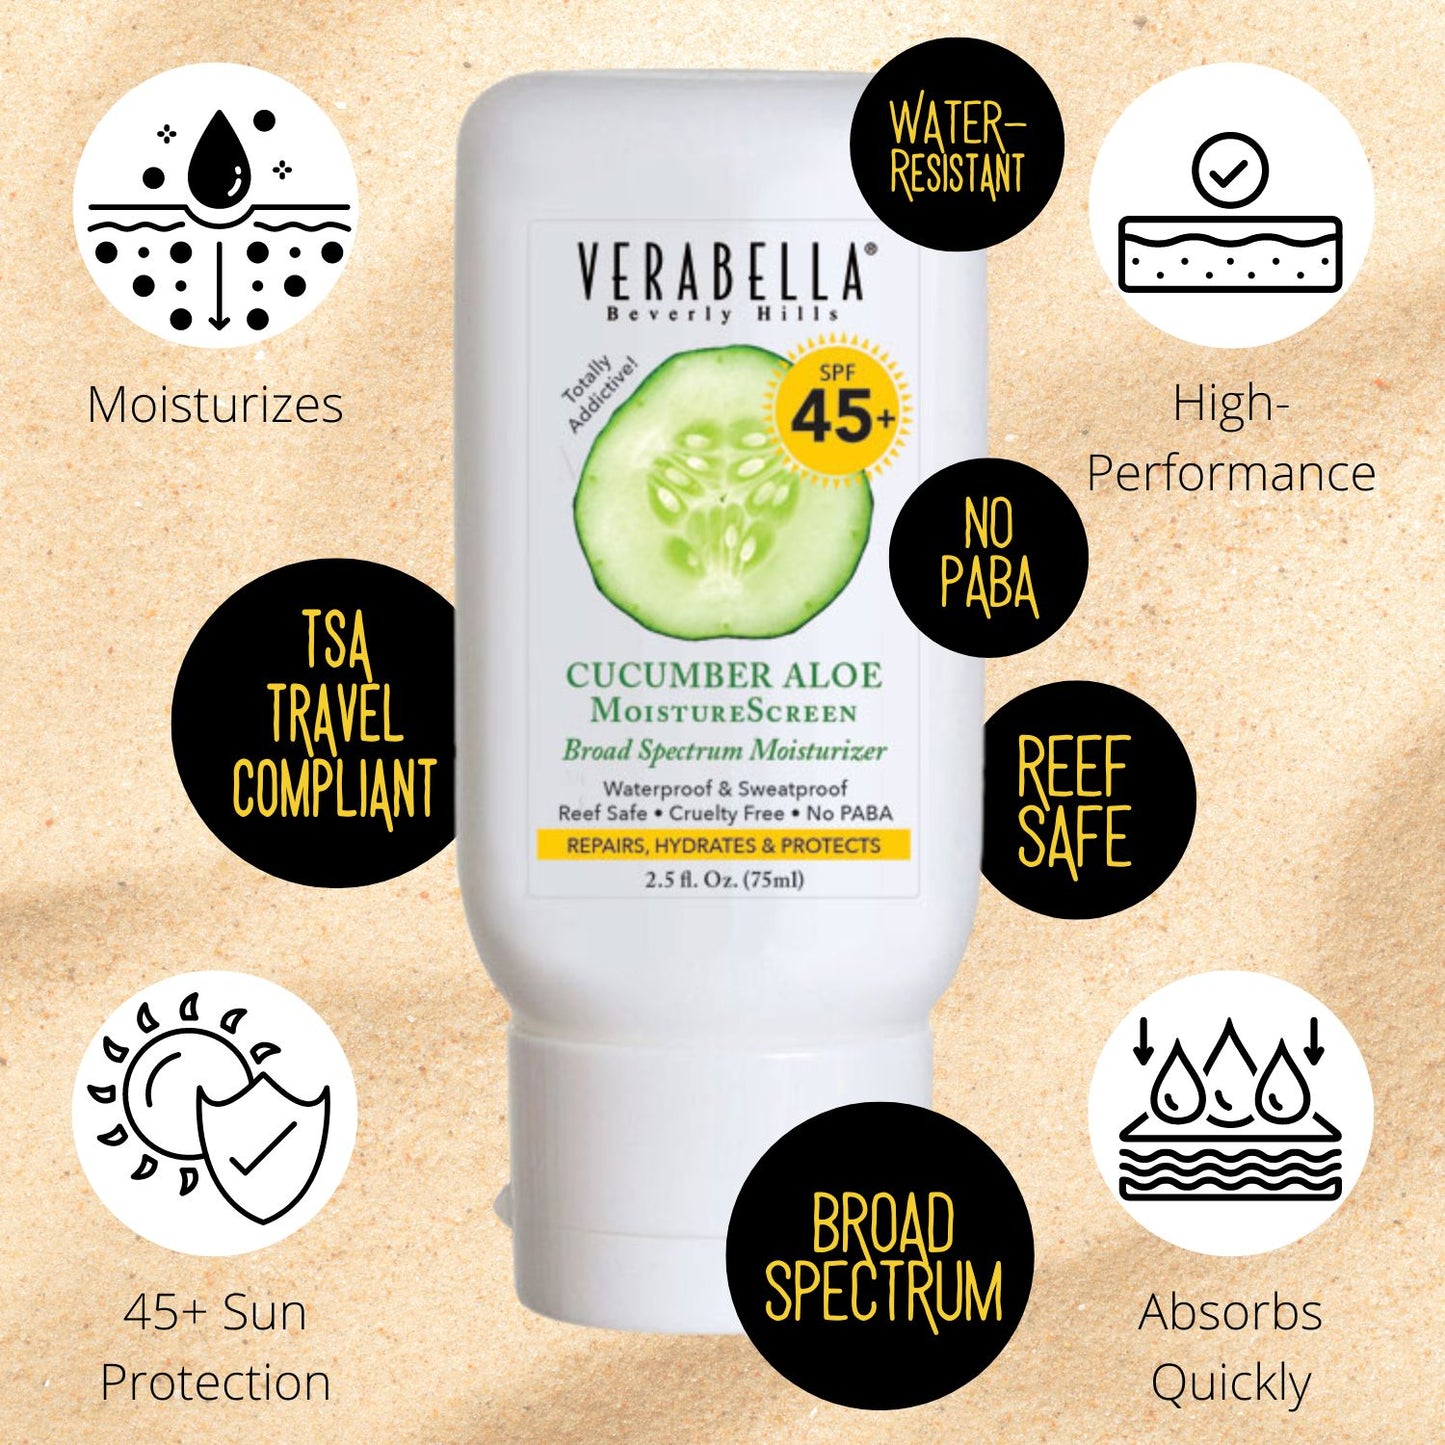 Benefits - Verabella Cucumber Aloe MoistureScreen SPF 45